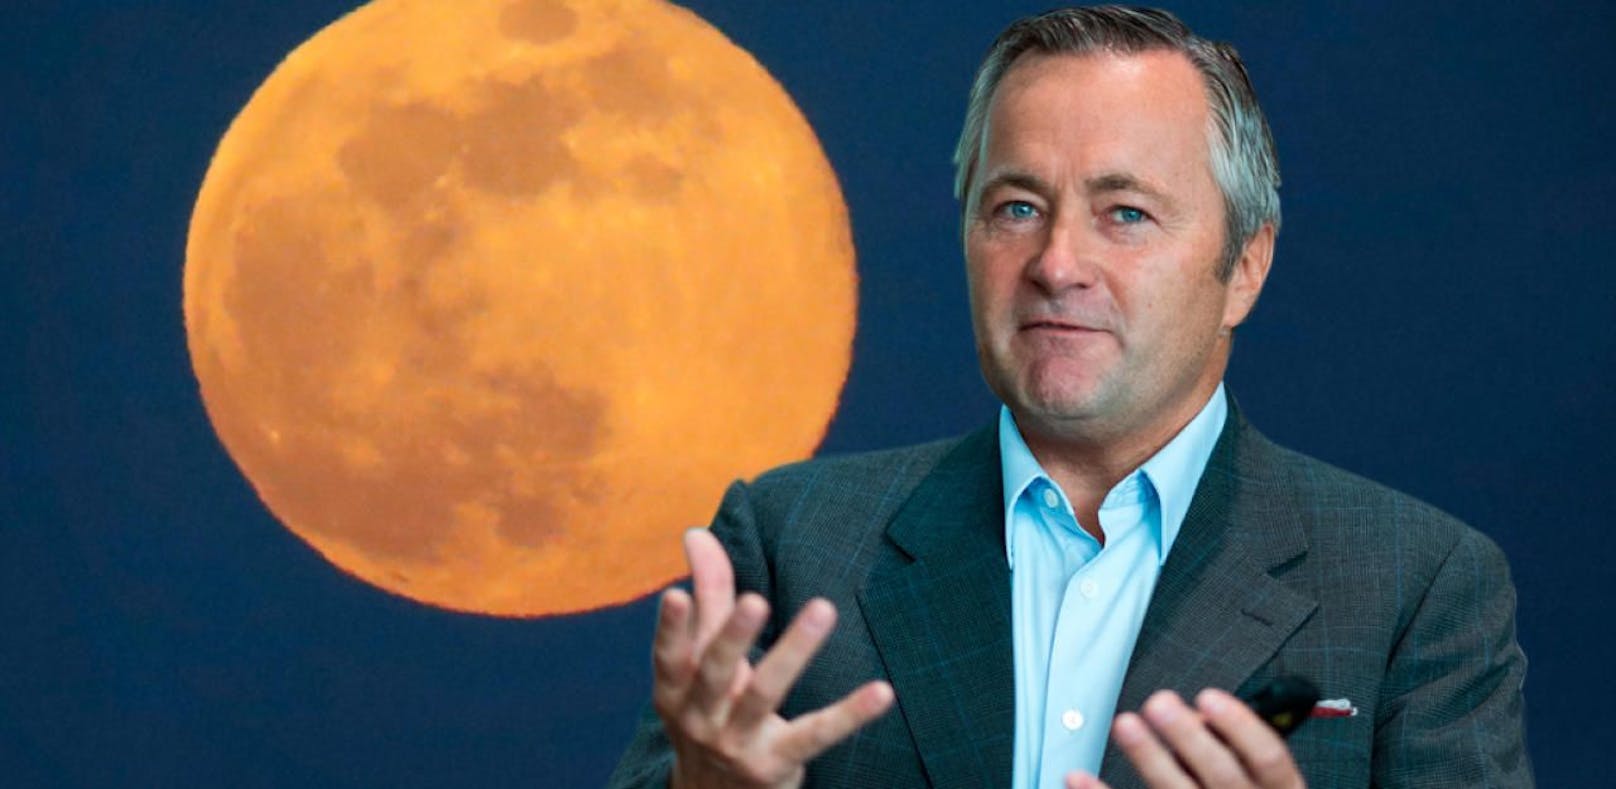 Vodafone Deutschland-CEO Hannes Ametsreiter will das erste Mobilfunknetz auf dem Mond errichten.